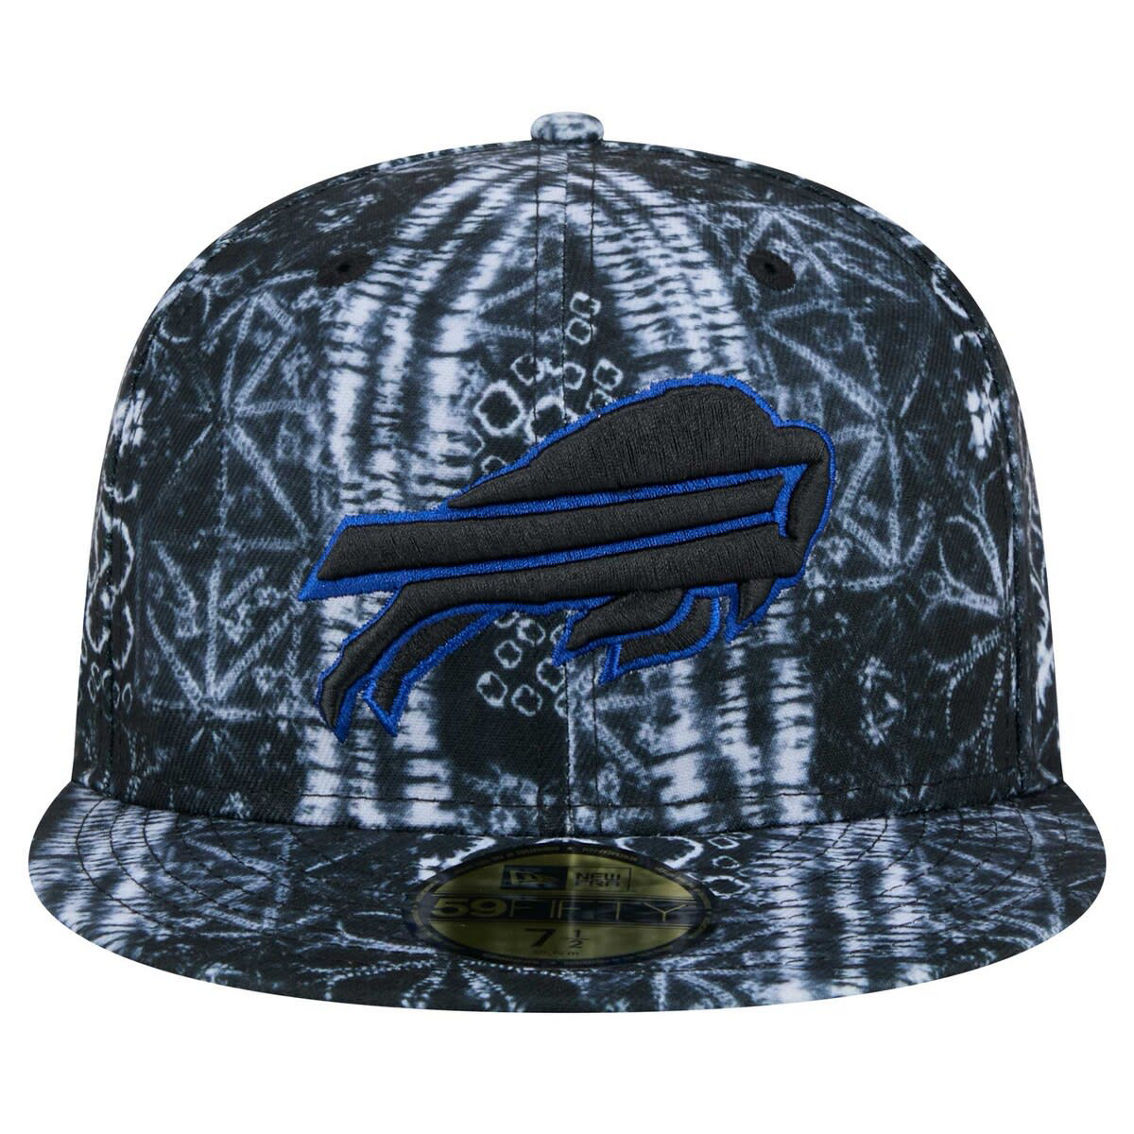 New Era Men's Black Buffalo Bills Shibori 59FIFTY Fitted Hat - Image 3 of 4